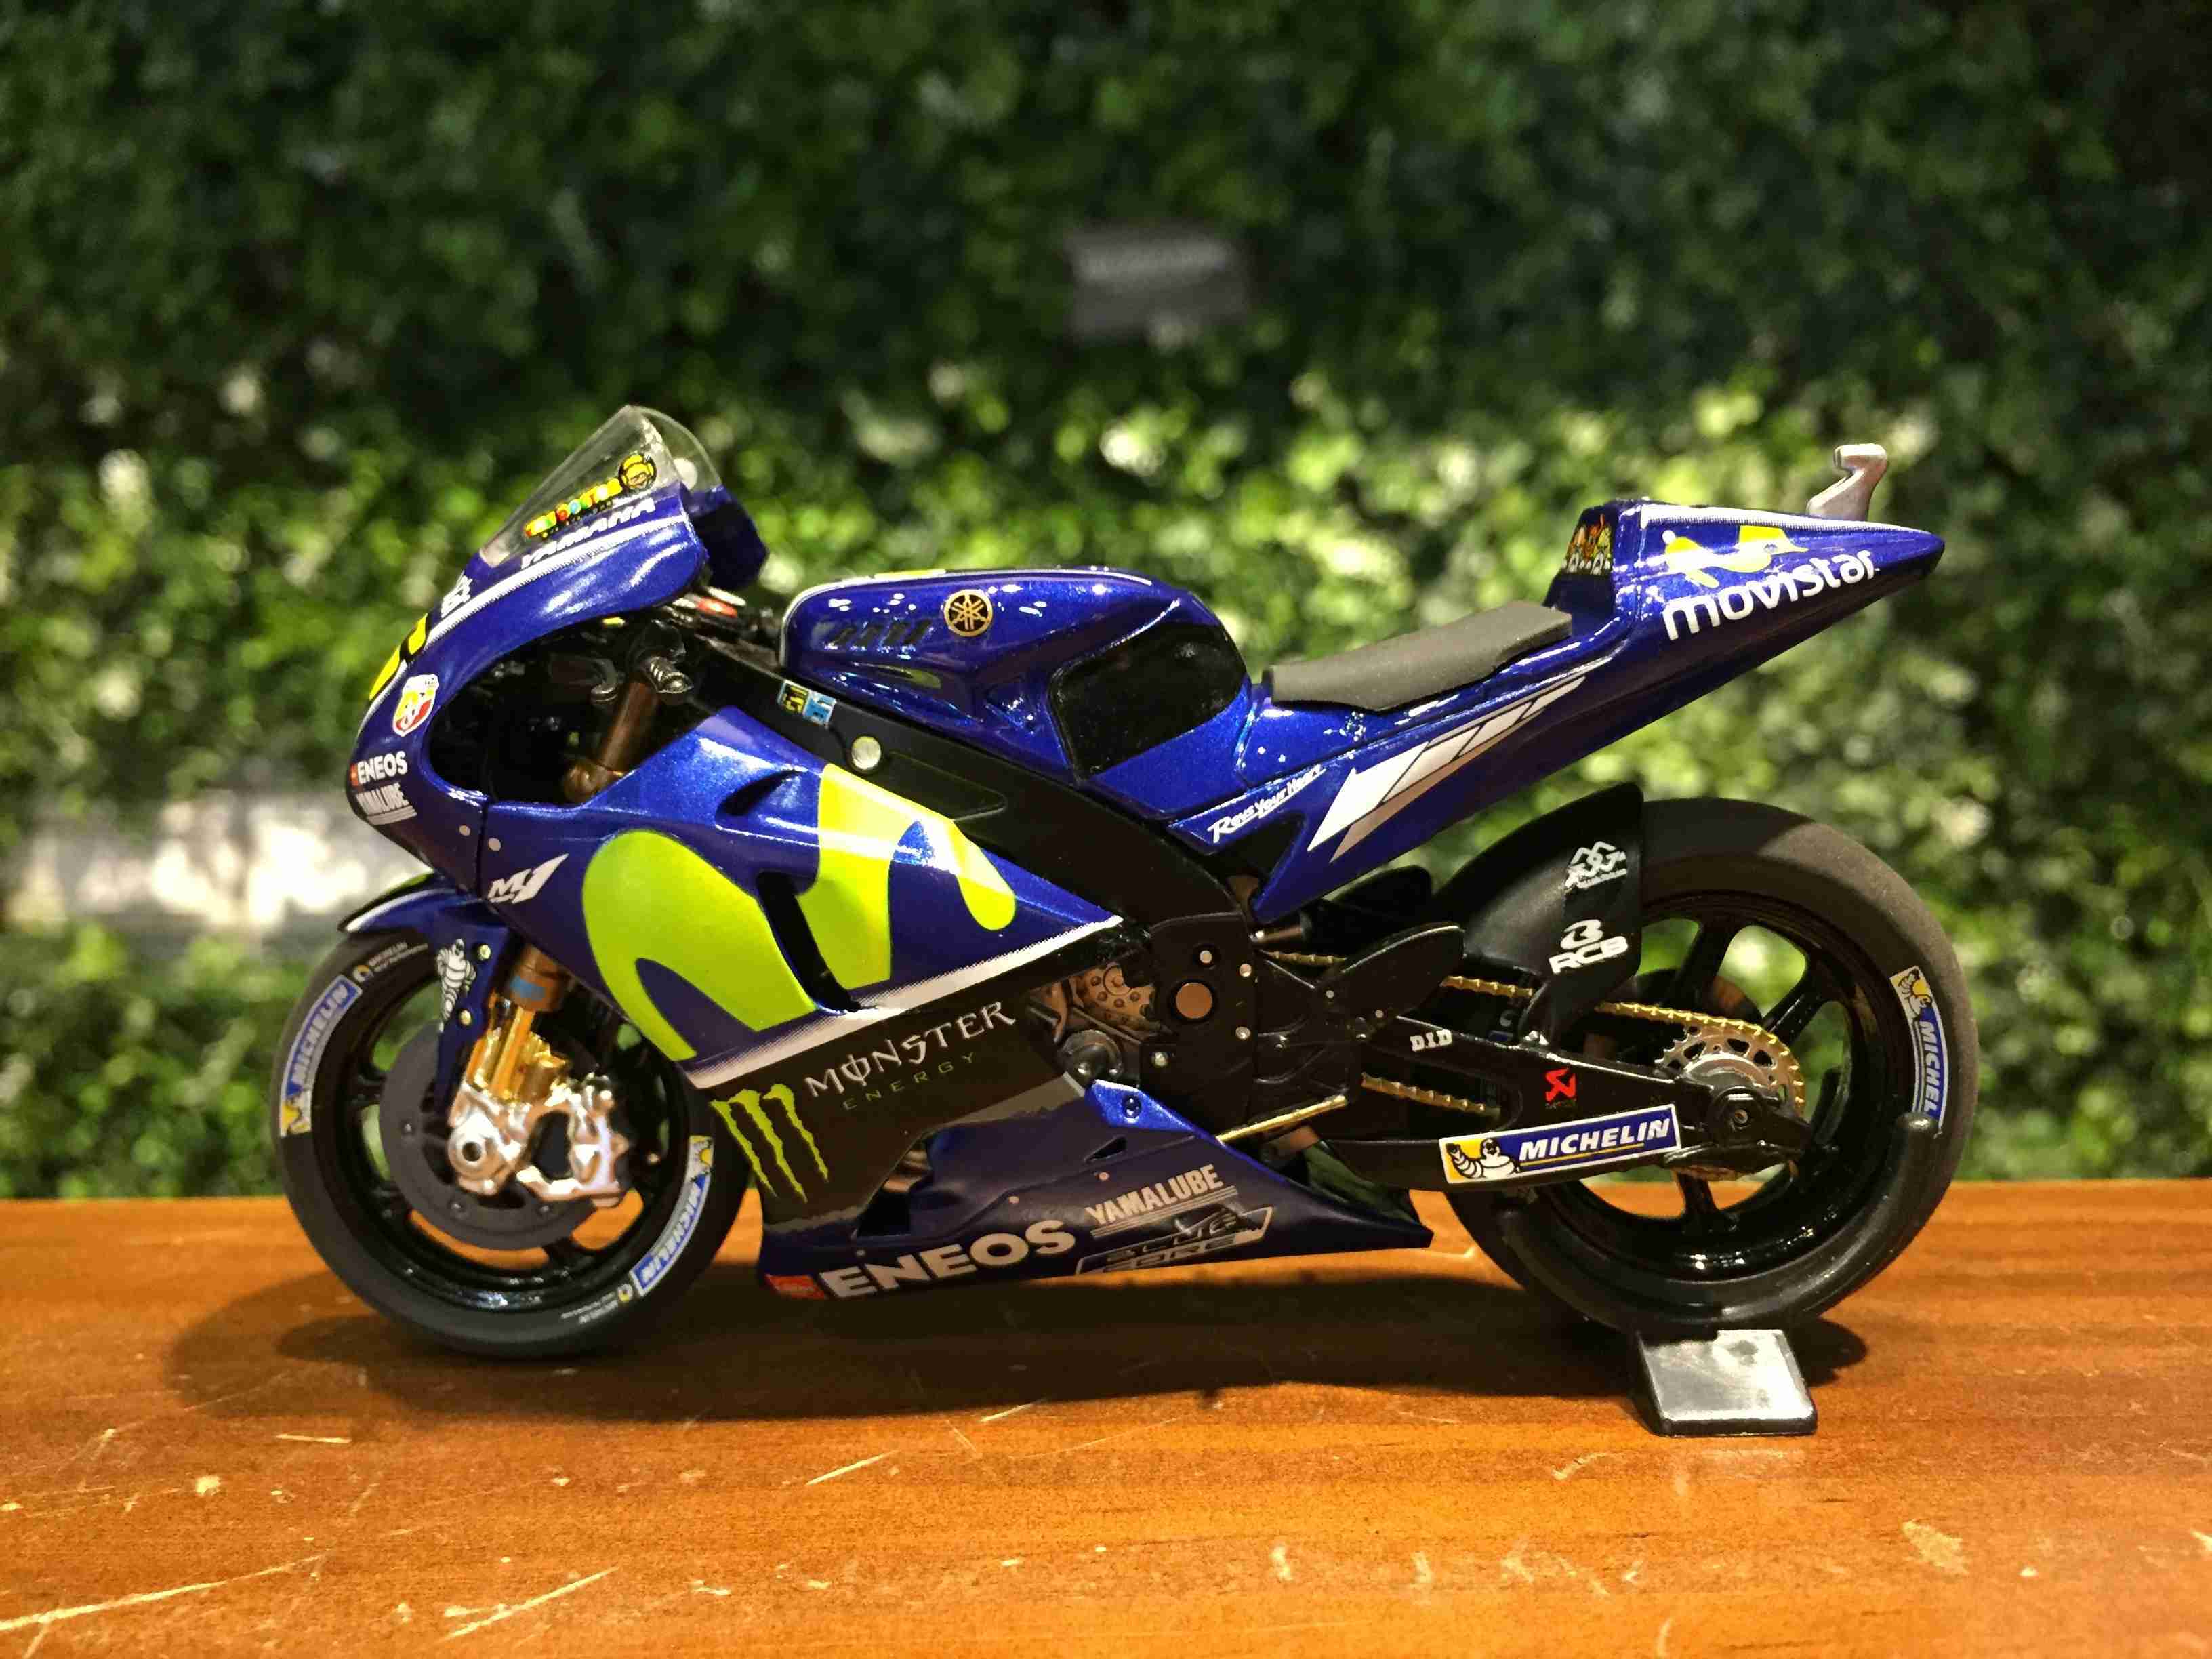 1/18 Minichamps Yamaha YZR-M1 V.Rossi MotoGP 182173046【MGM】